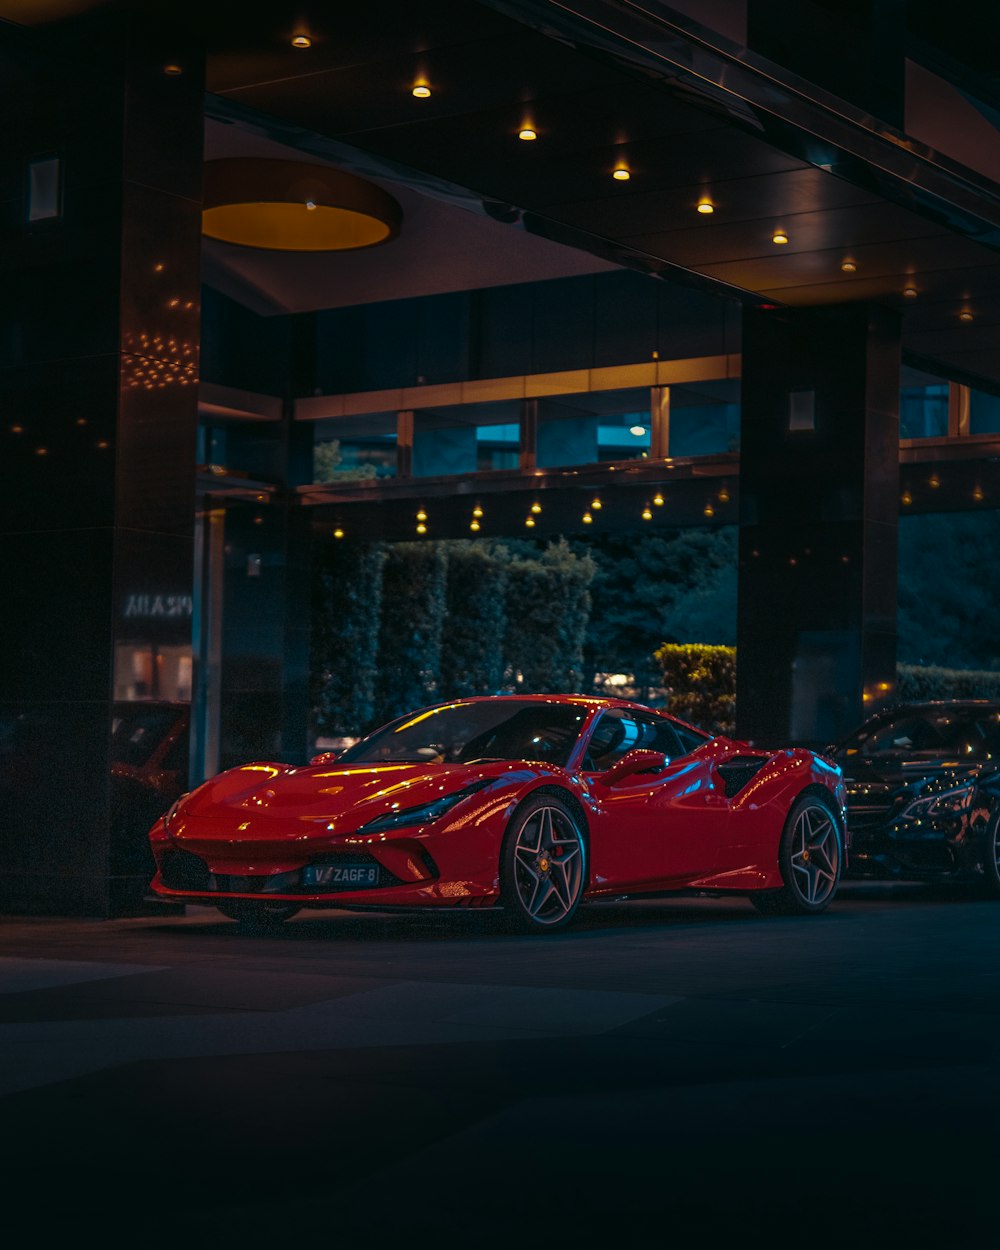 Ferrari Wallpapers: Free HD Download [12+ HQ]  Unsplash